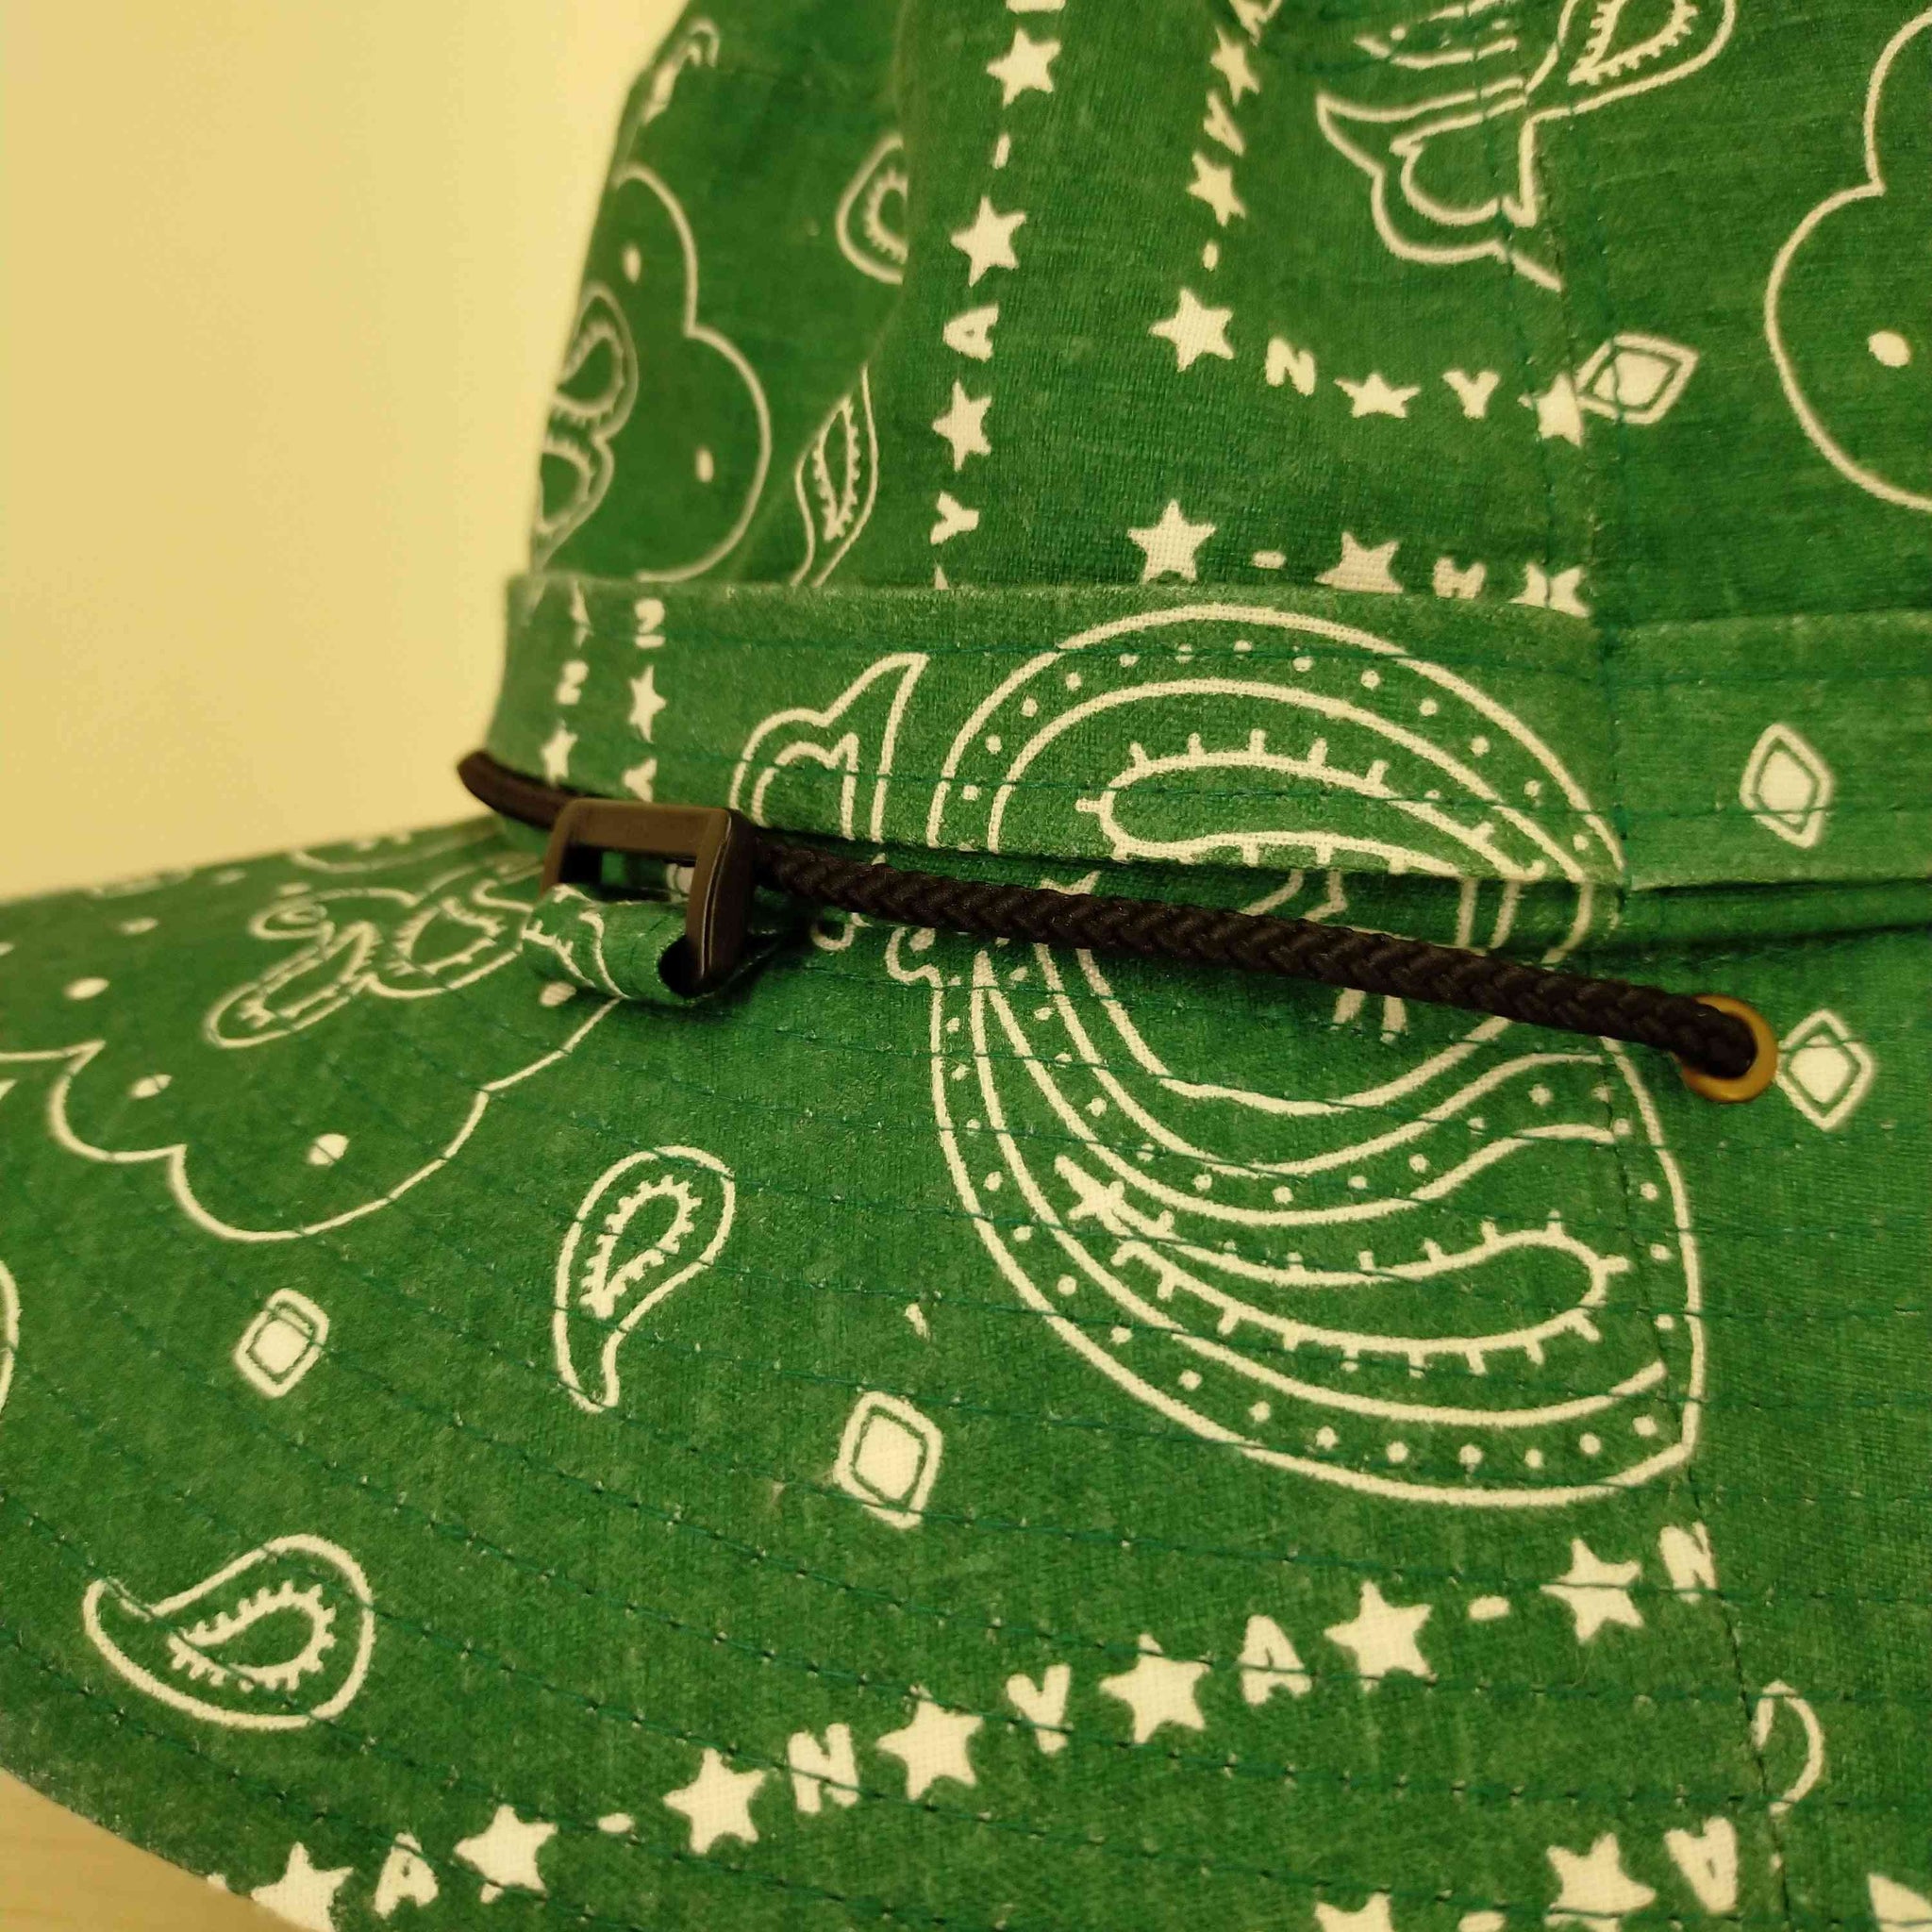 にゃー(ニャー)バンドゥヌにゃーハット 帽子